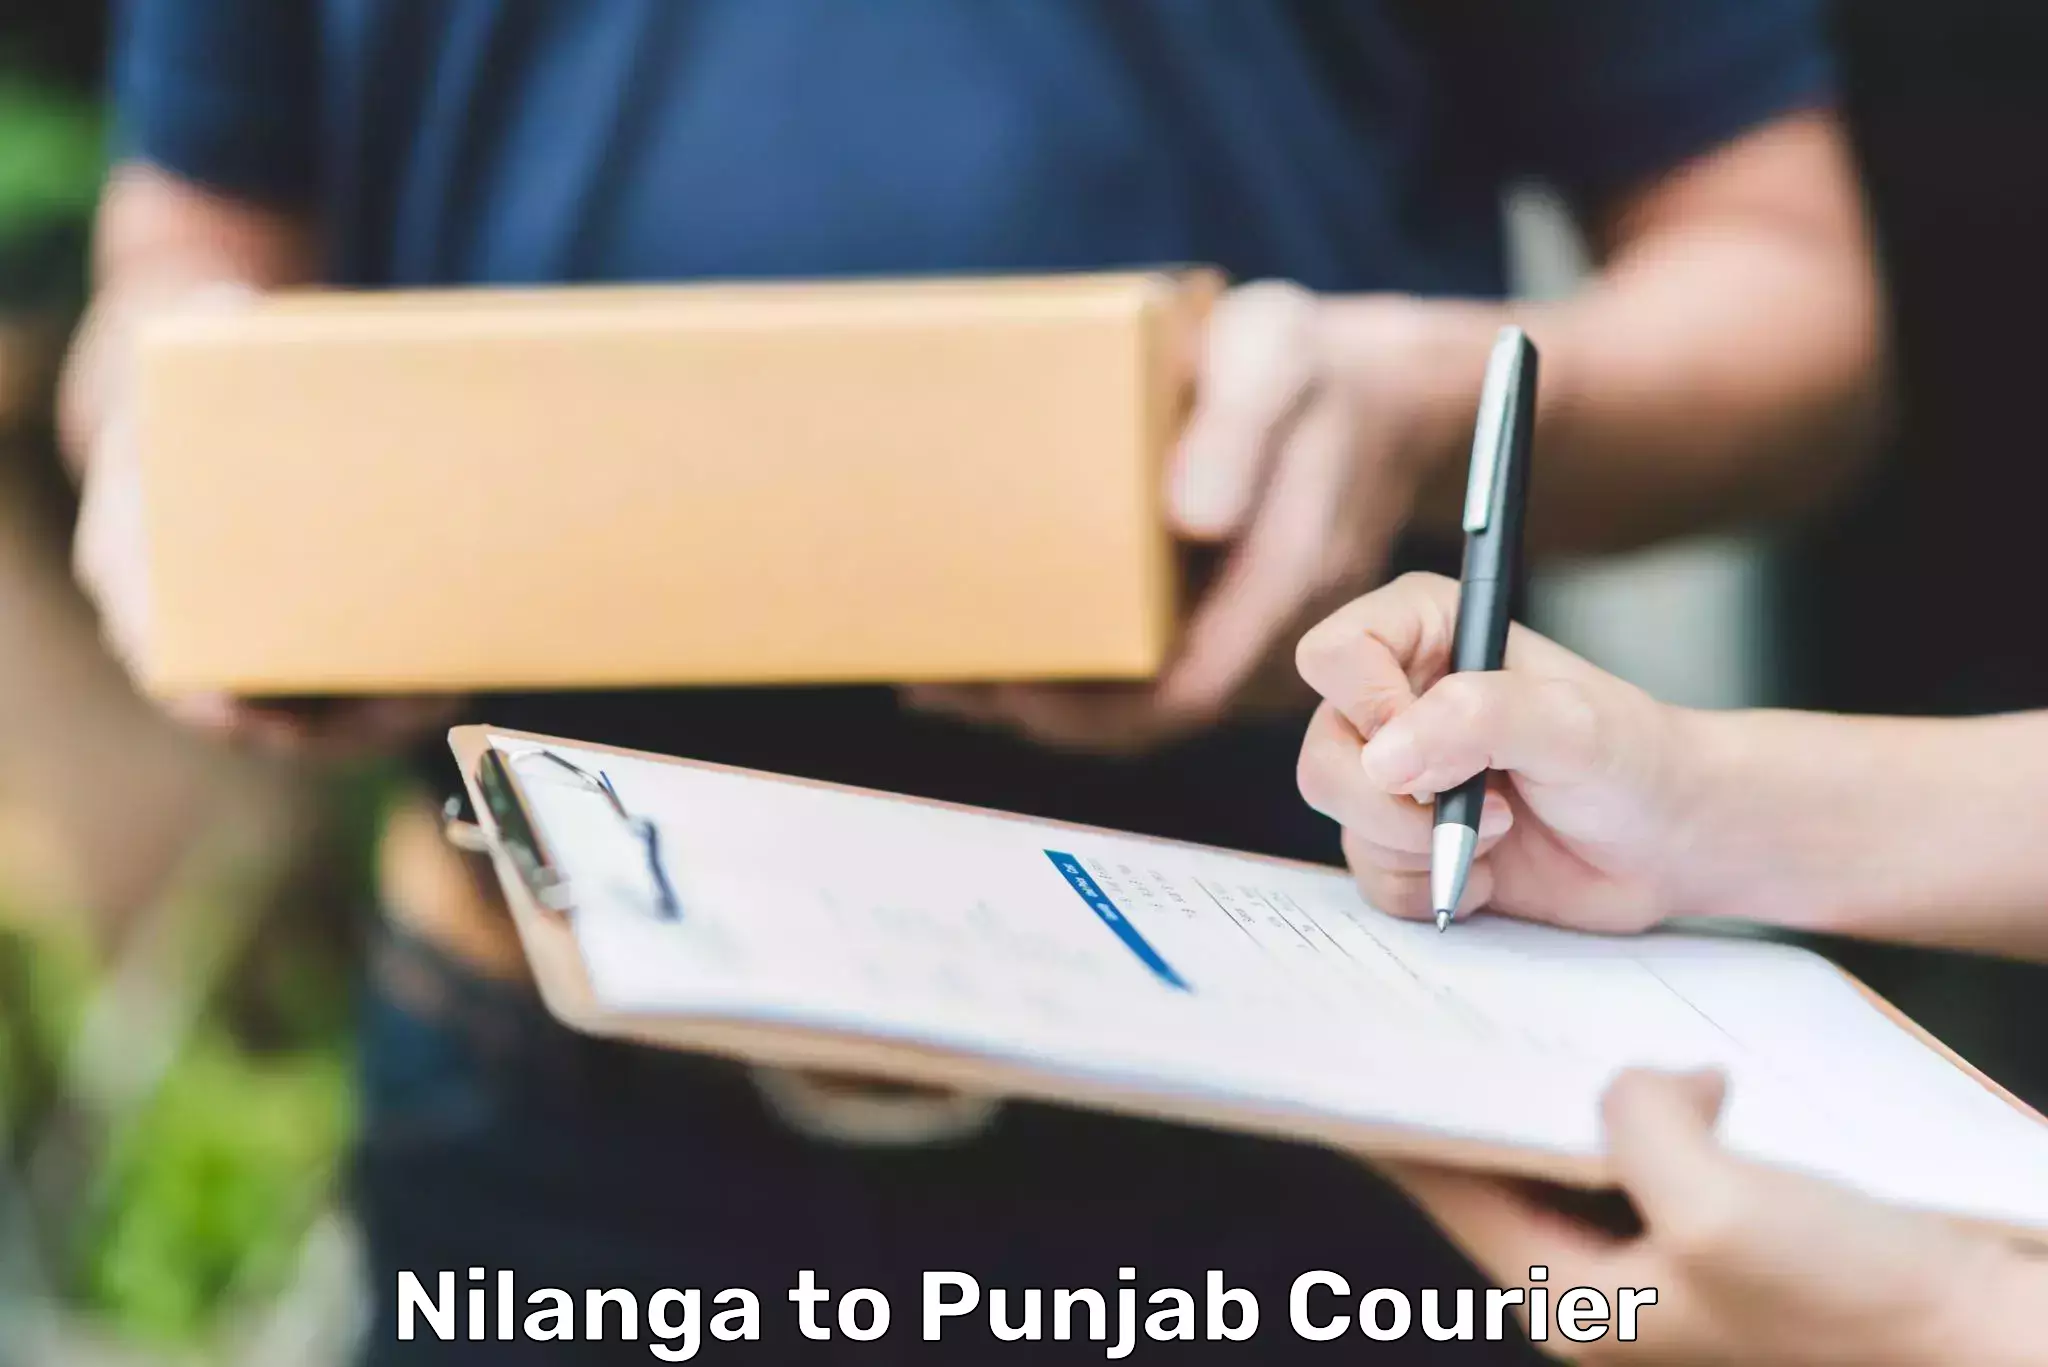 24/7 courier service Nilanga to Fatehgarh Sahib